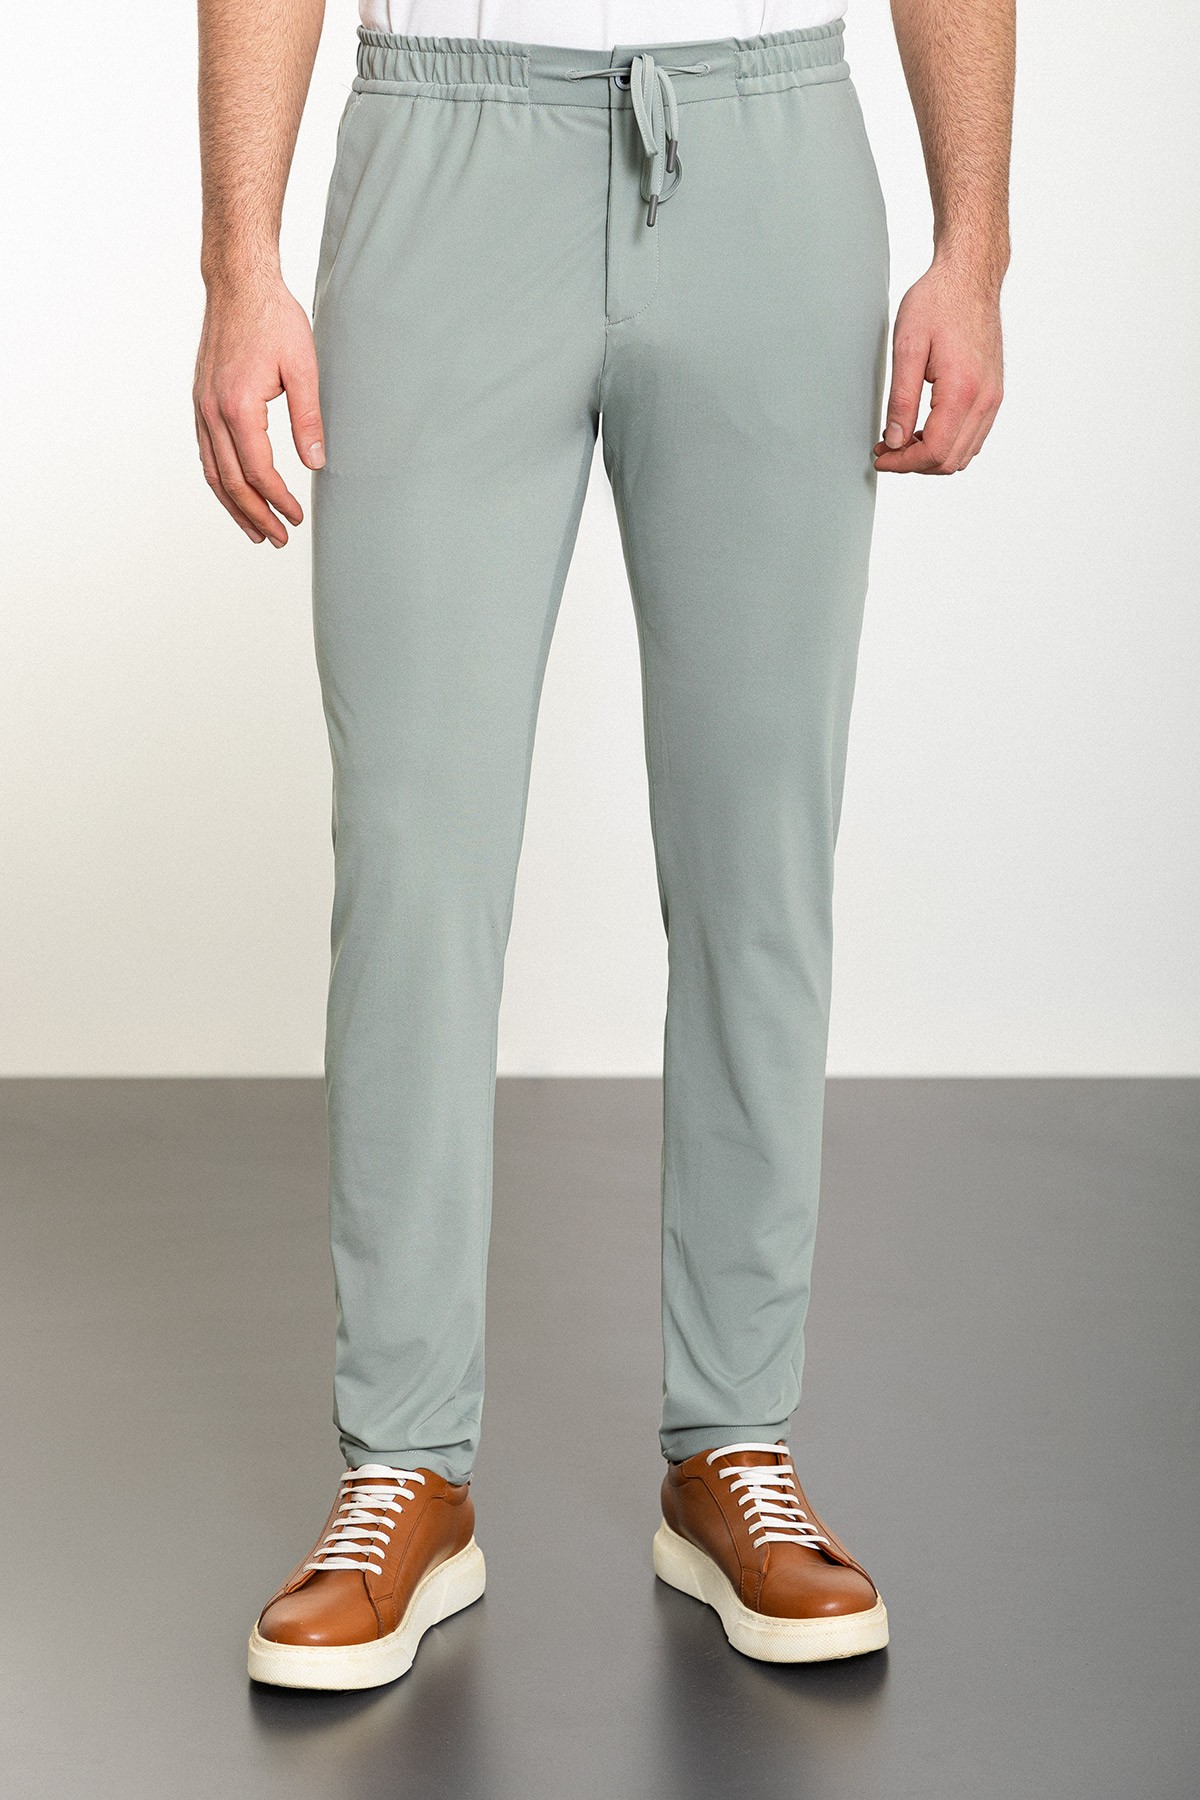 Düz Super Slim Fit Beli Lastikli İpli Erkek Pantolon - Açık Yeşil